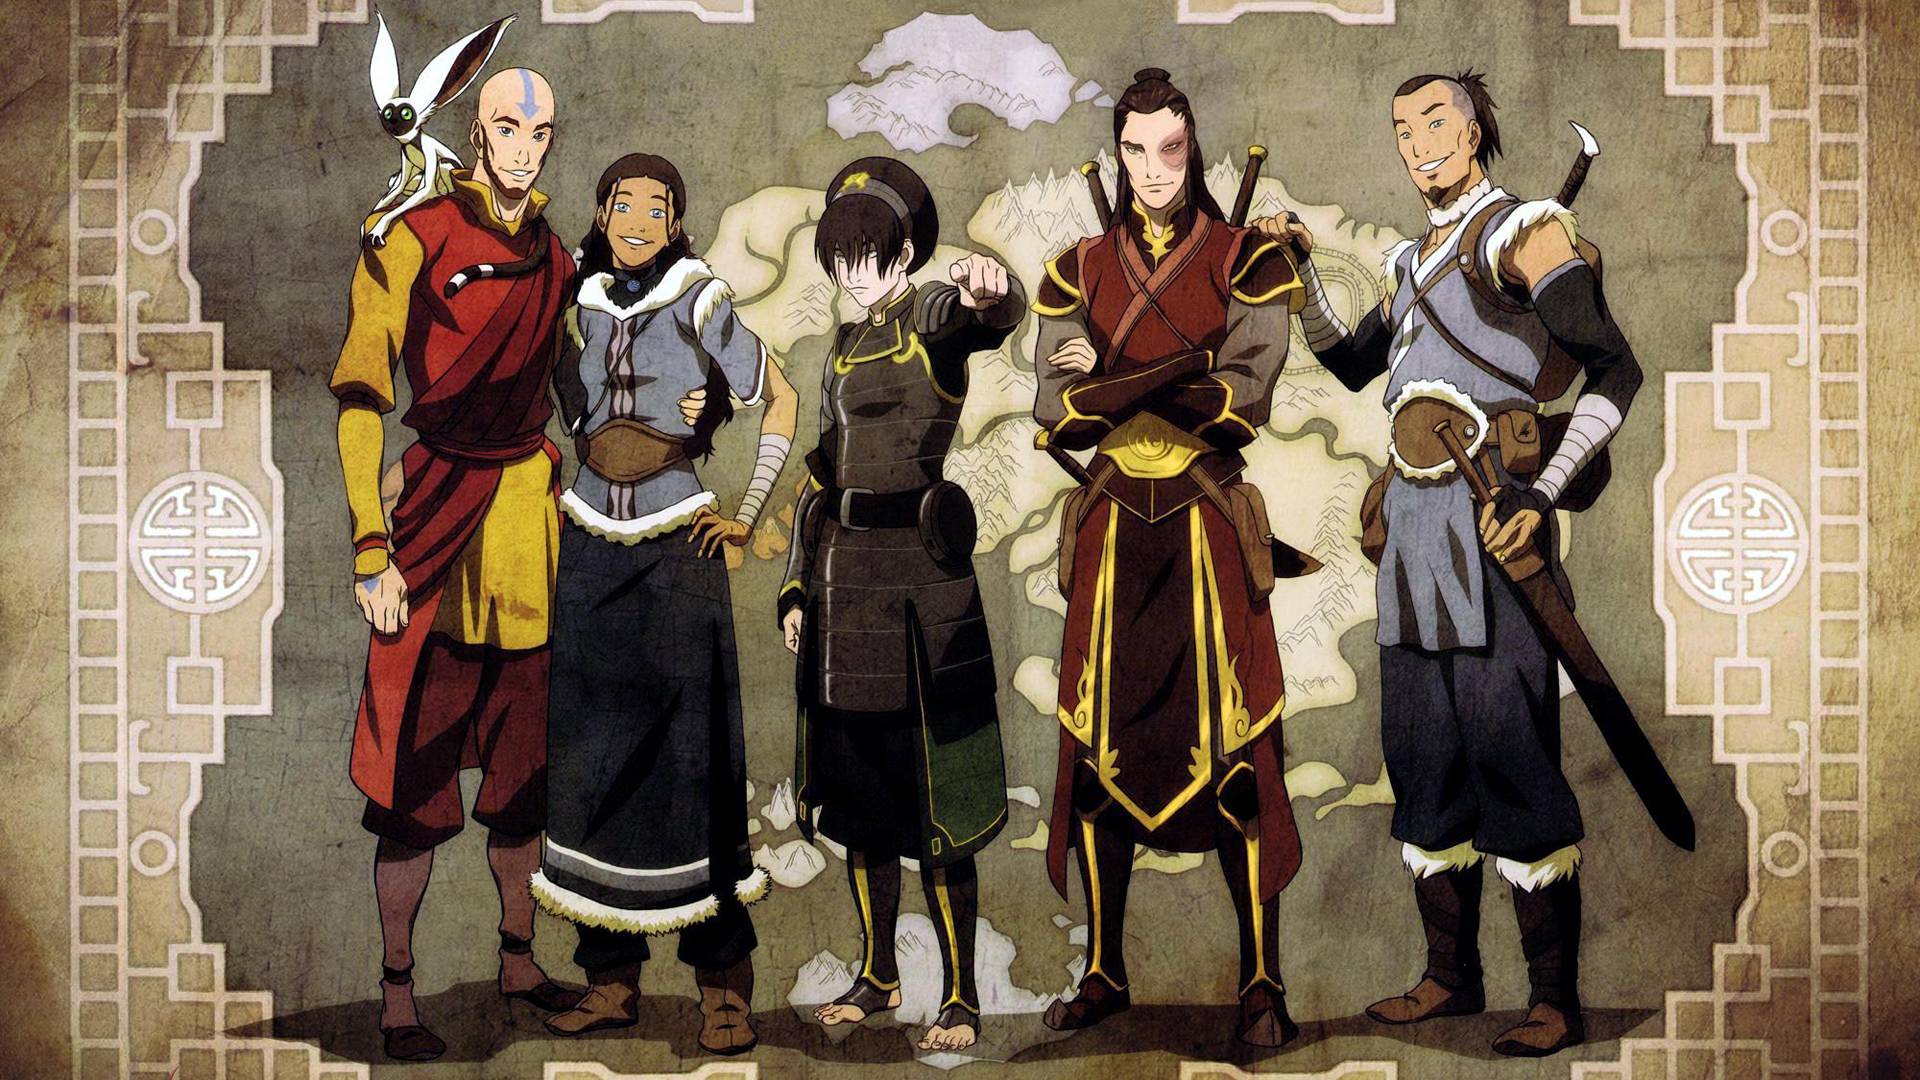 Mako Korra Avatar The Legend Of Korra Wallpapers